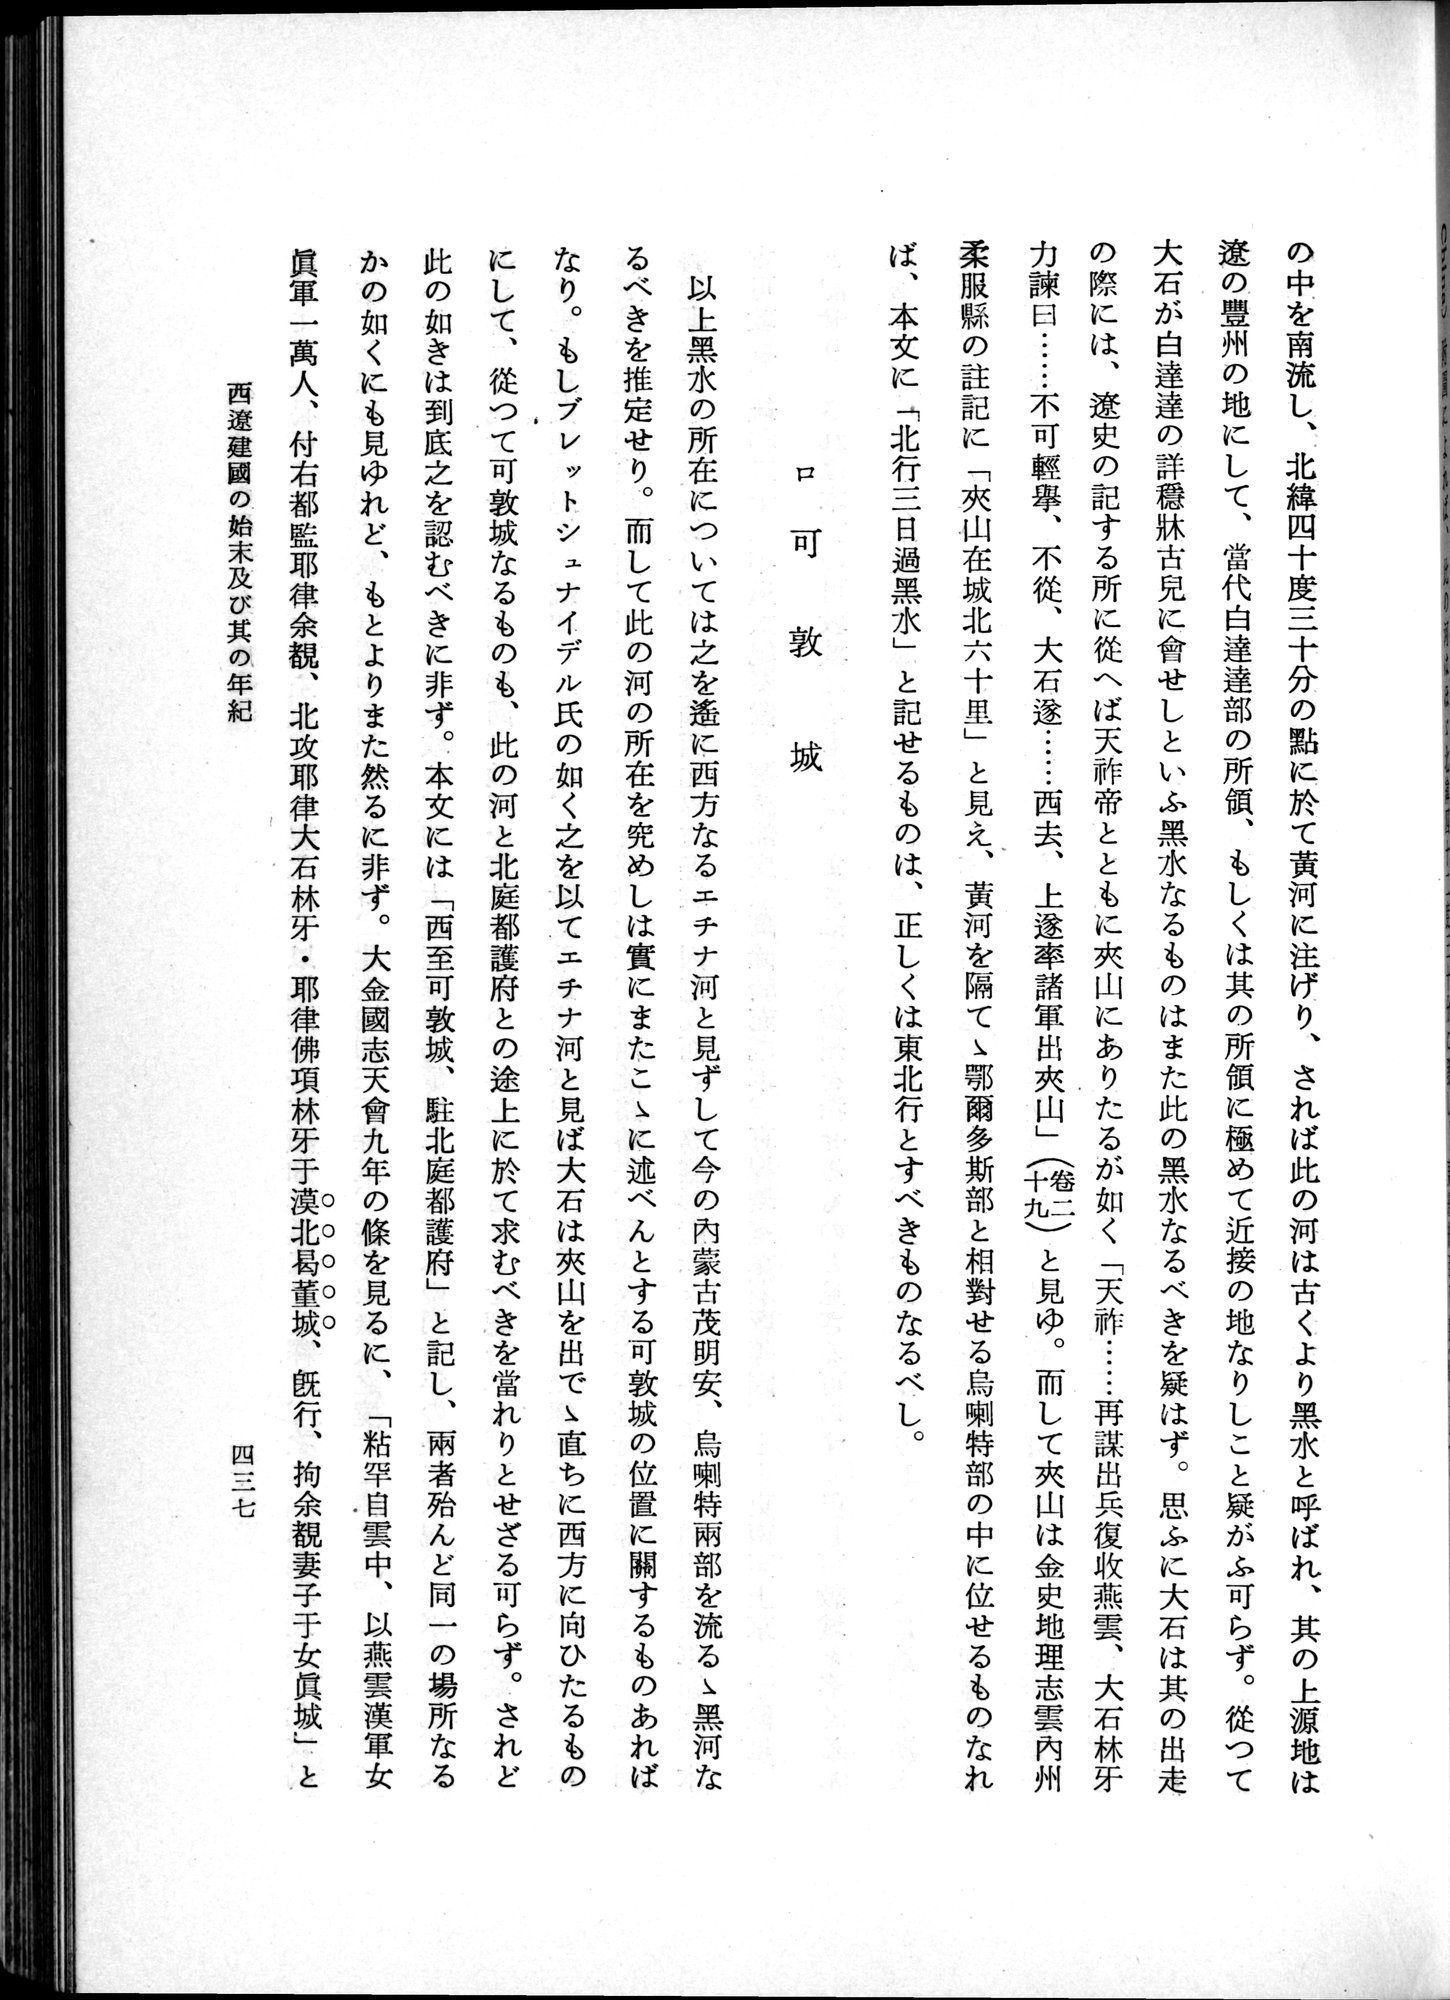 羽田博士史学論文集 : vol.1 / Page 475 (Grayscale High Resolution Image)